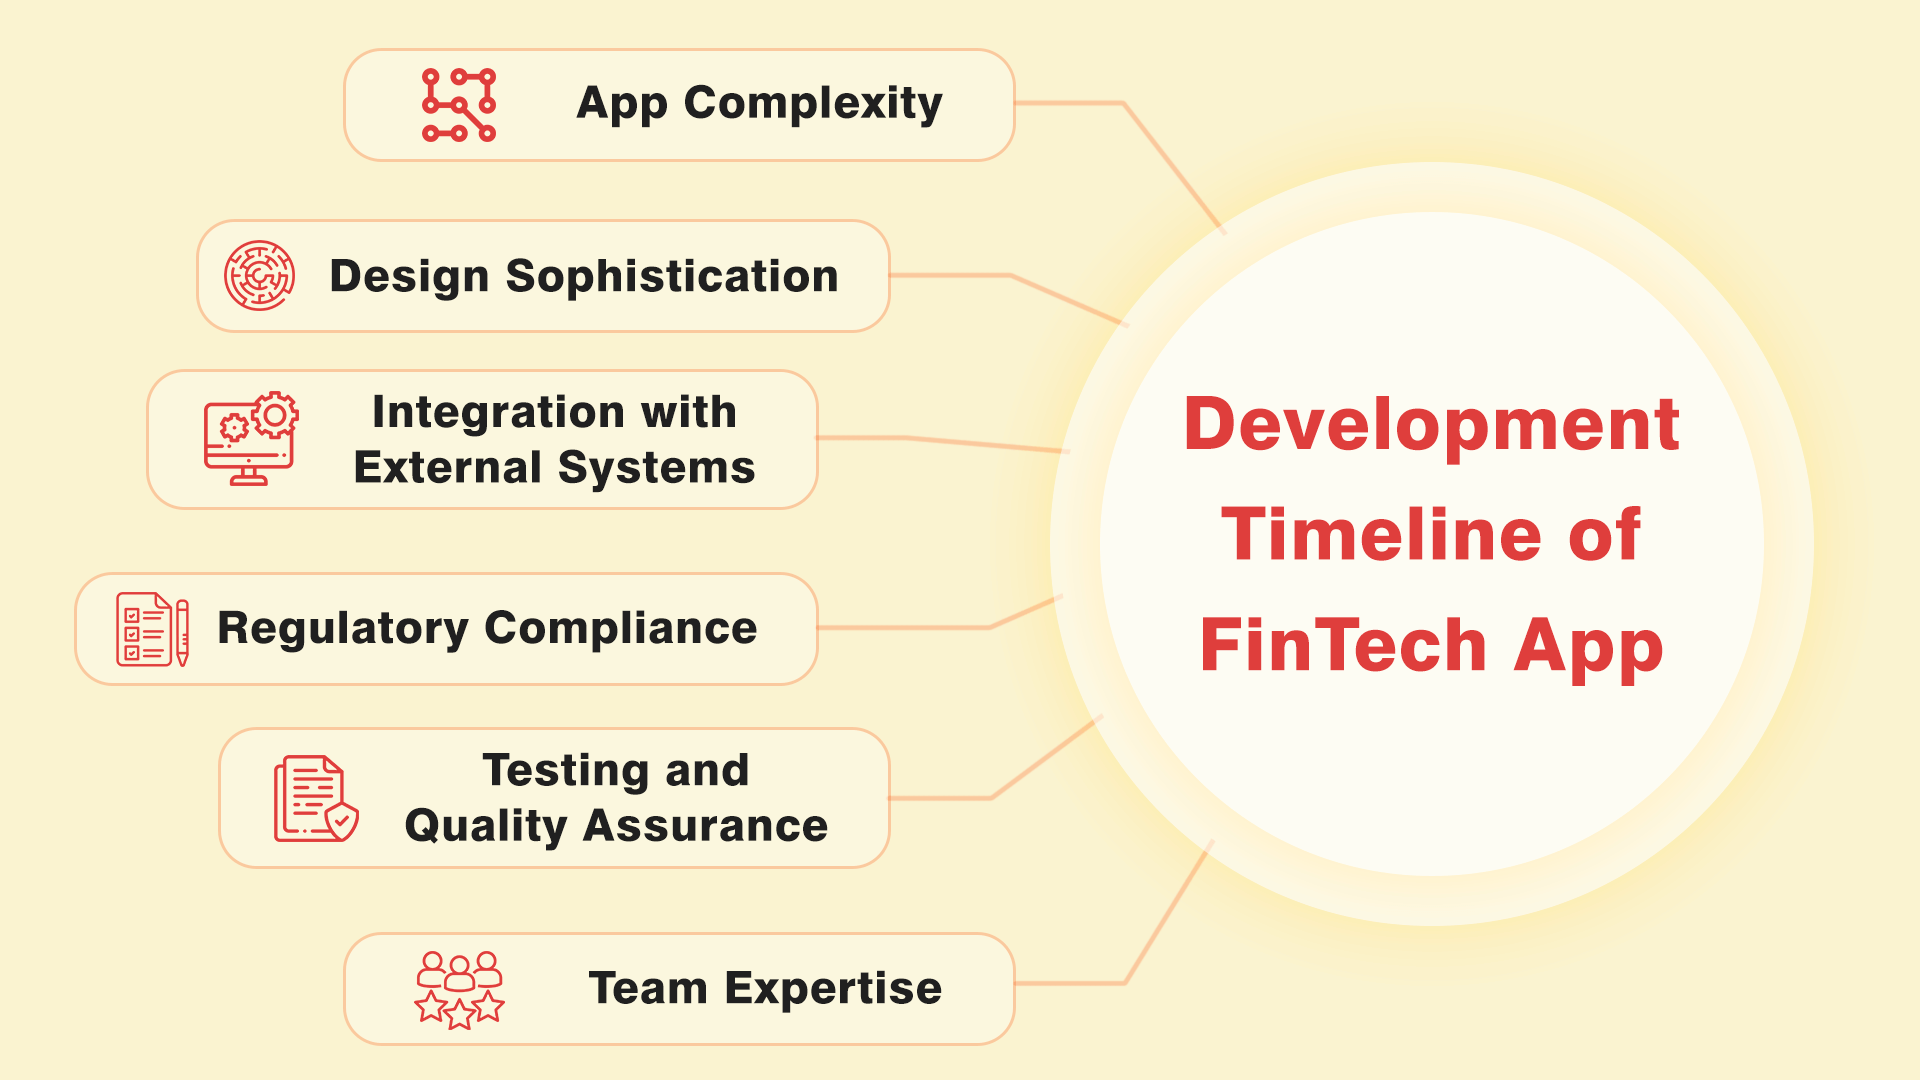 Development Timeline of FinTech App